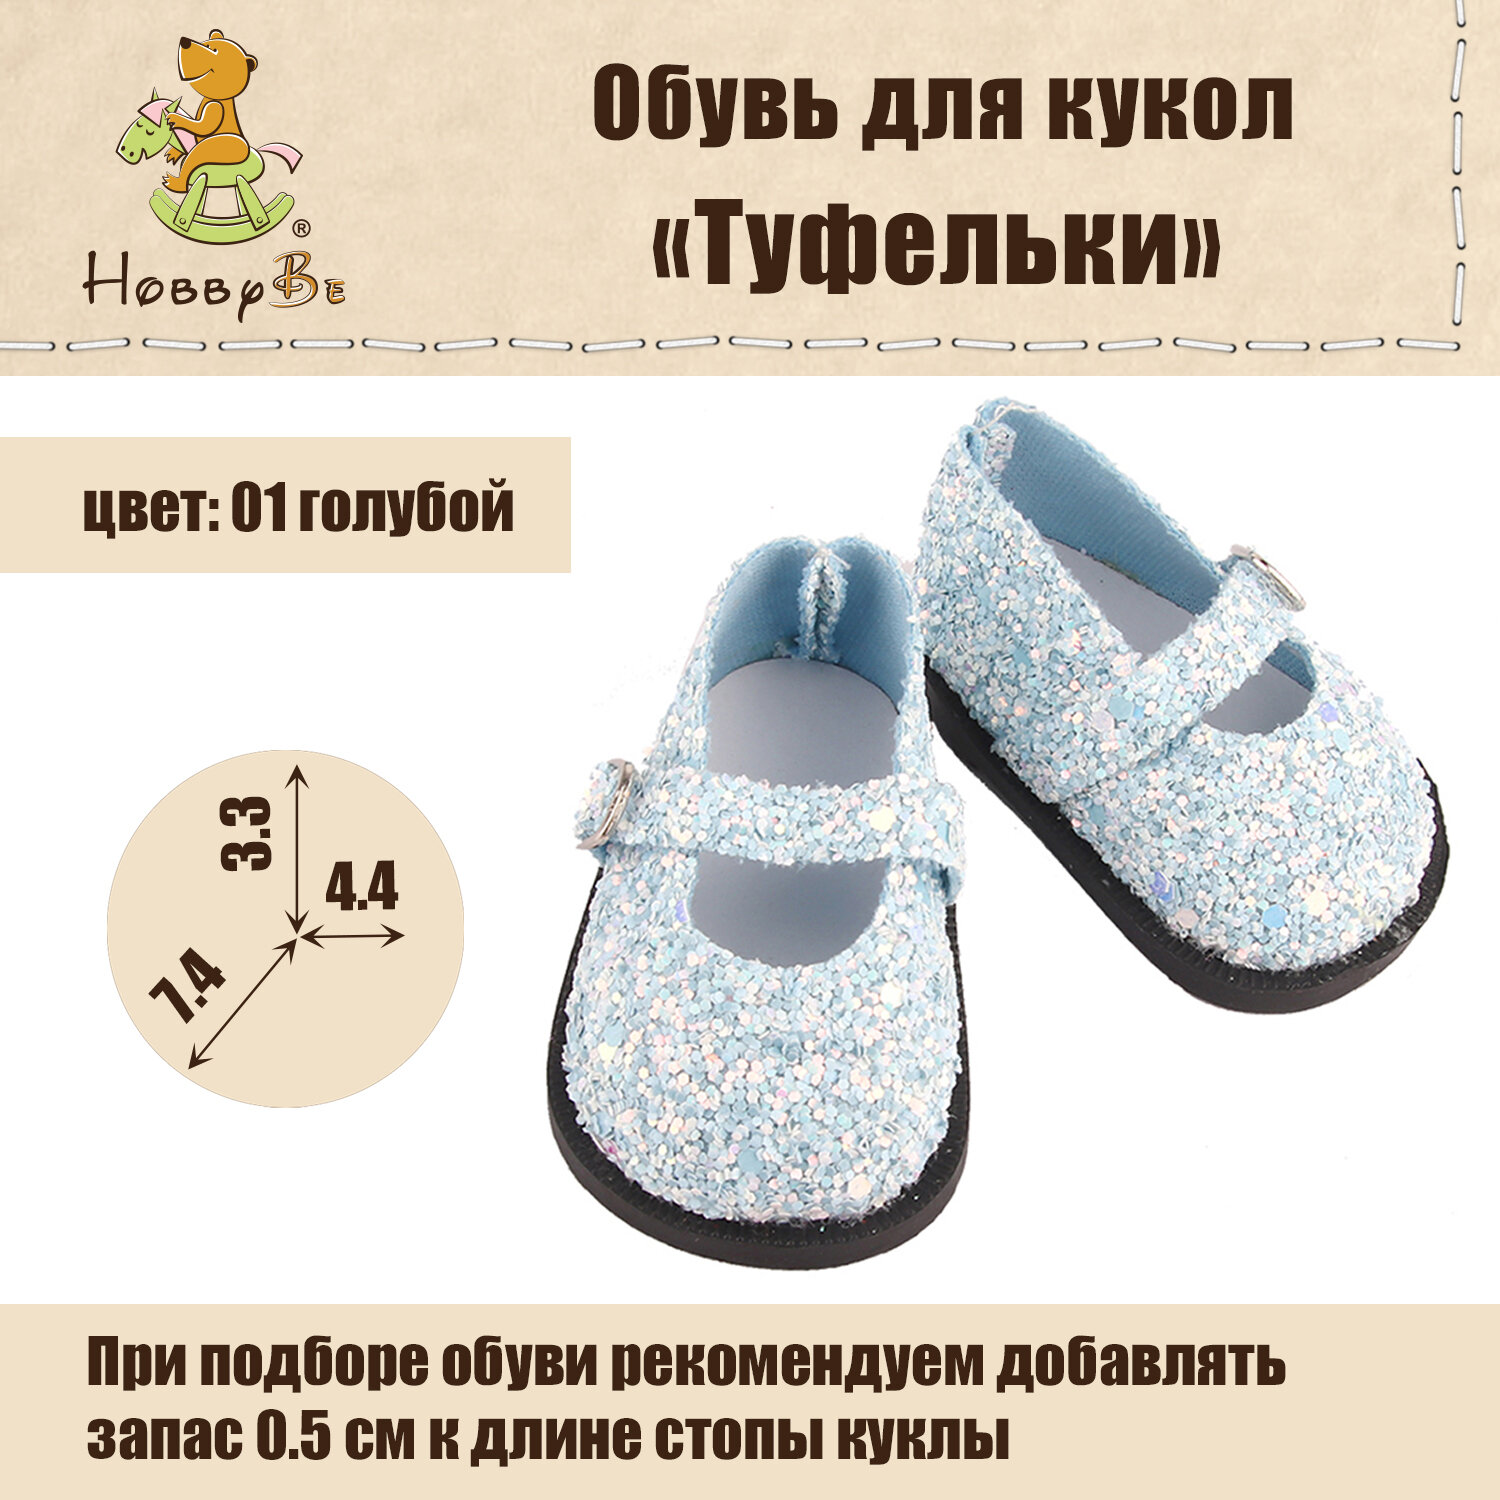 Обувь для кукол "HobbyBe" KBG-6 аксессуары "Туфельки" 7.5 см 01 голубой